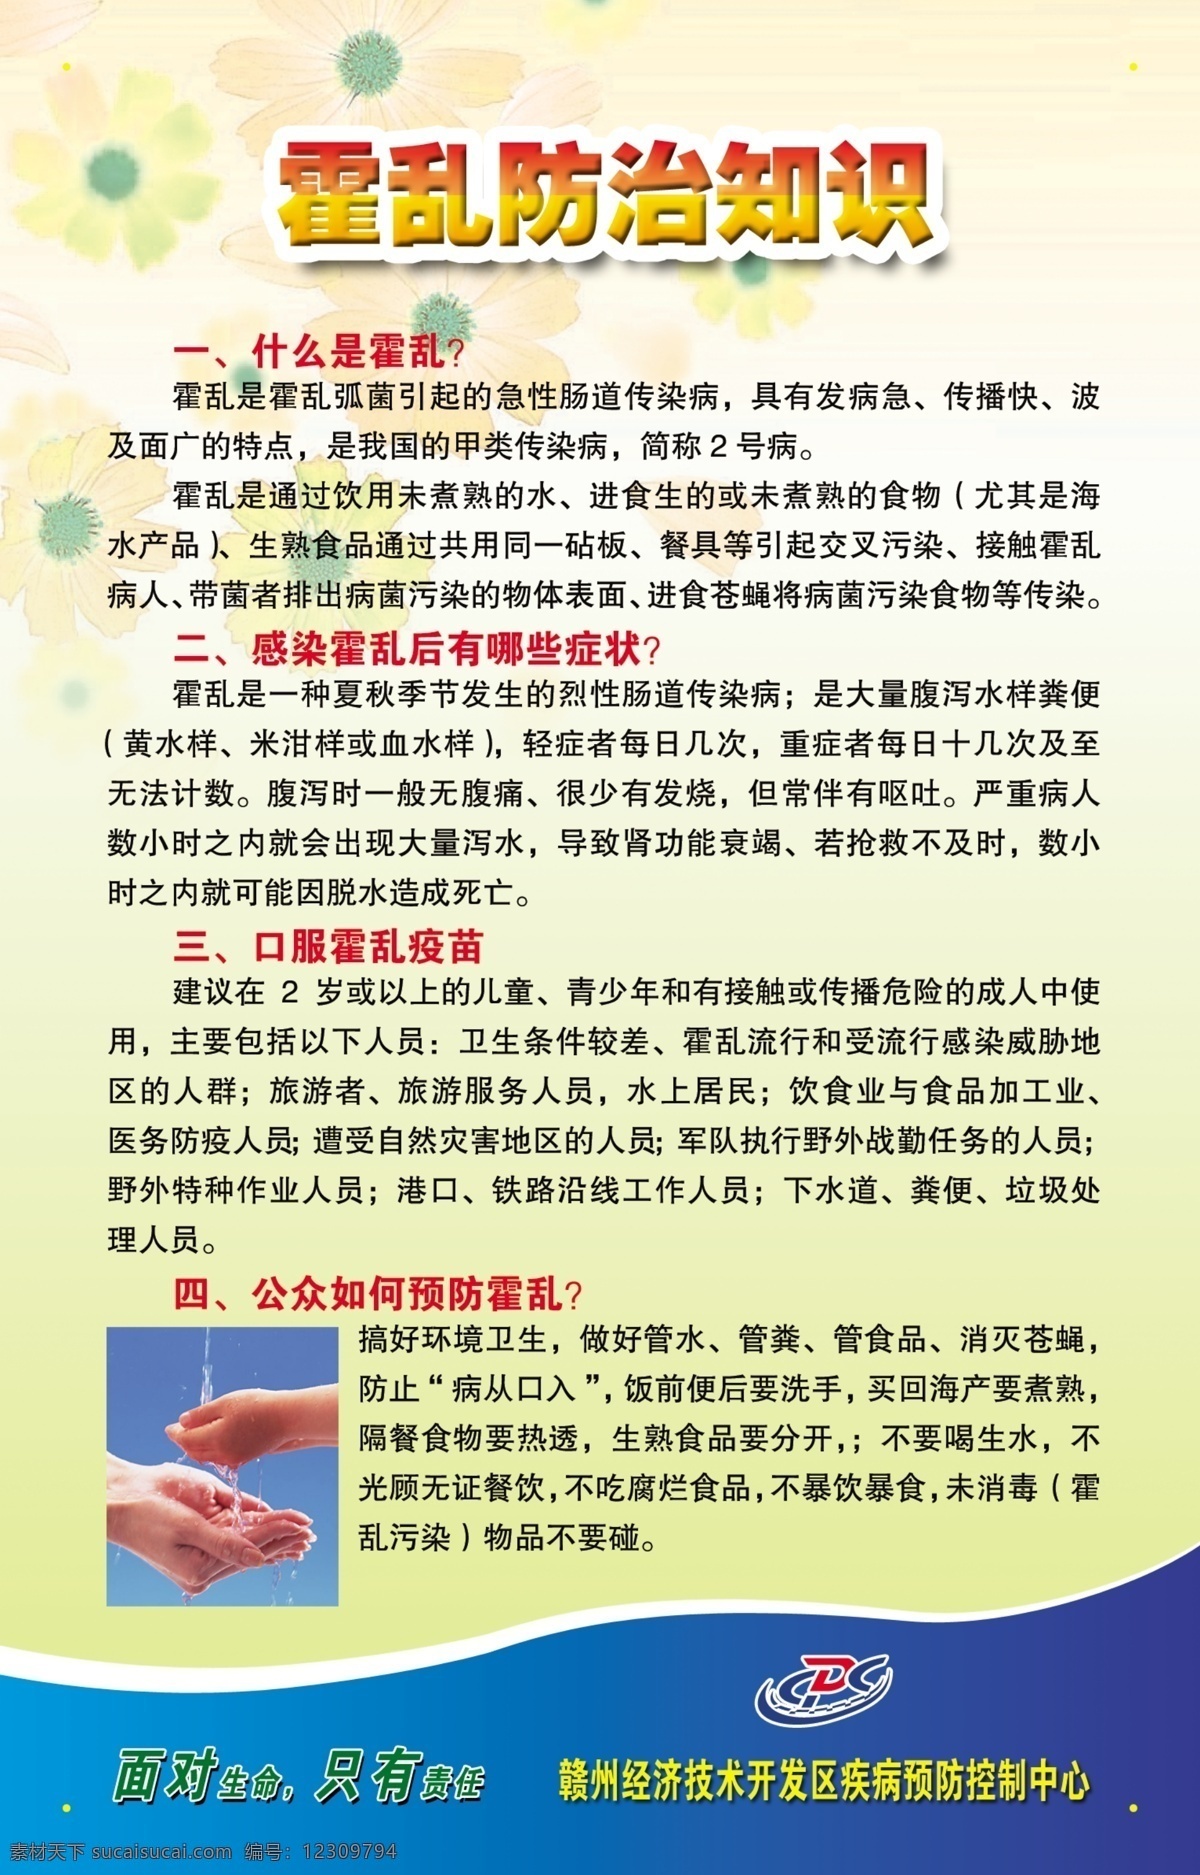 霍乱疫苗 霍乱 疫苗 cdc 赣州 经济技术 开发区 疾病预防 控制 中心 广告设计模板 生活小常识 源文件库